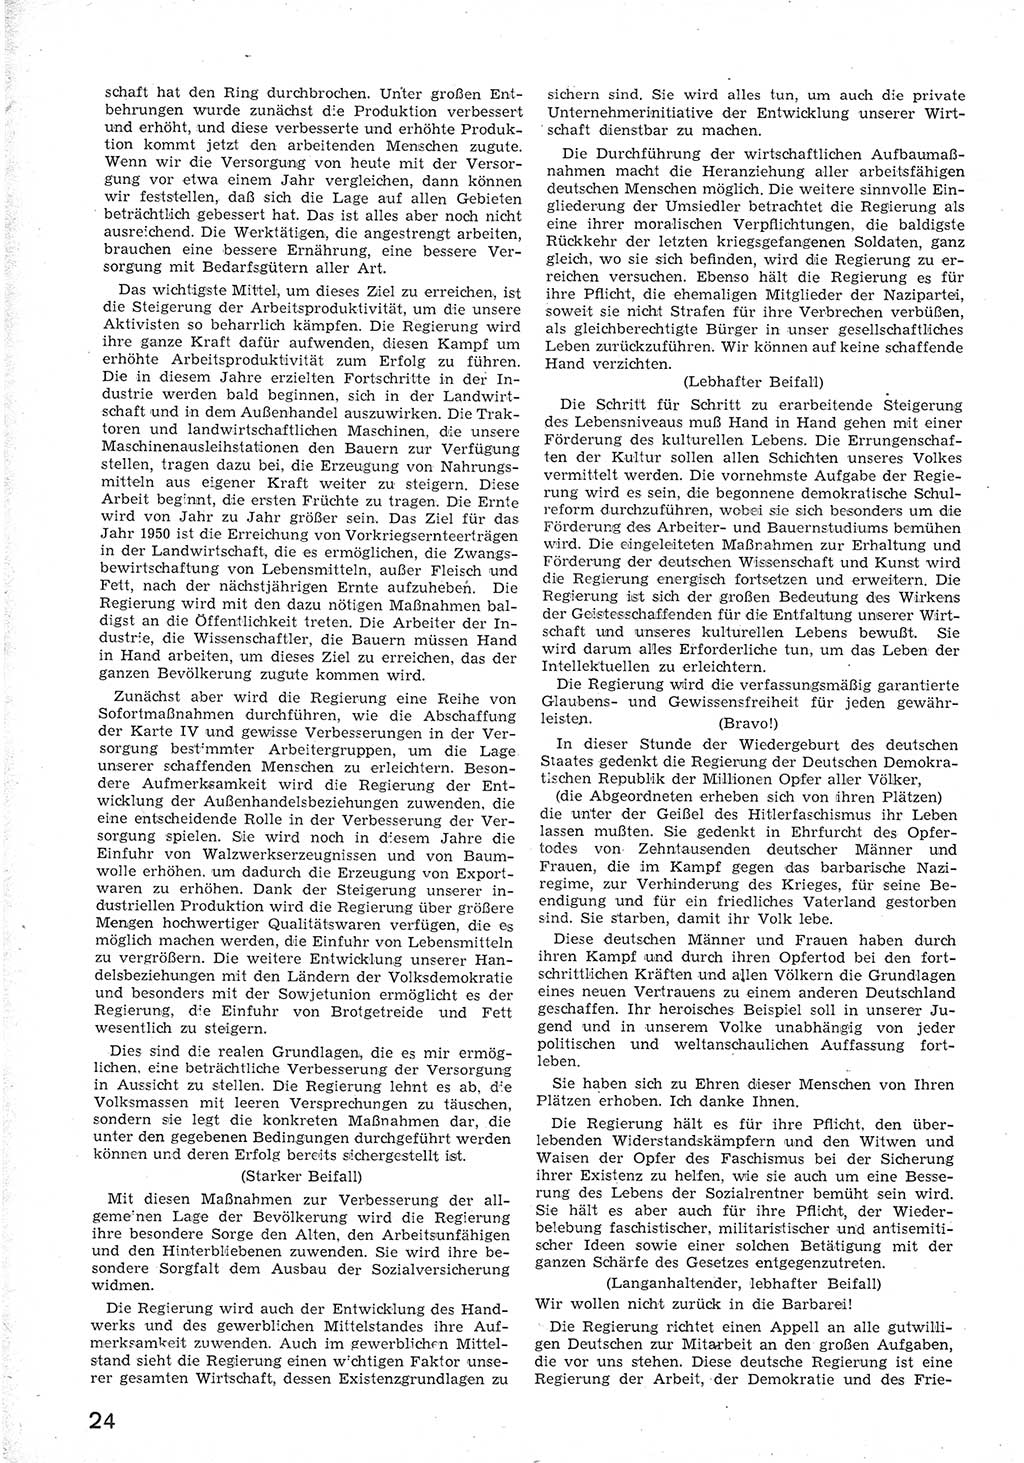 Provisorische Volkskammer (VK) der Deutschen Demokratischen Republik (DDR) 1949-1950, Dokument 36 (Prov. VK DDR 1949-1950, Dok. 36)